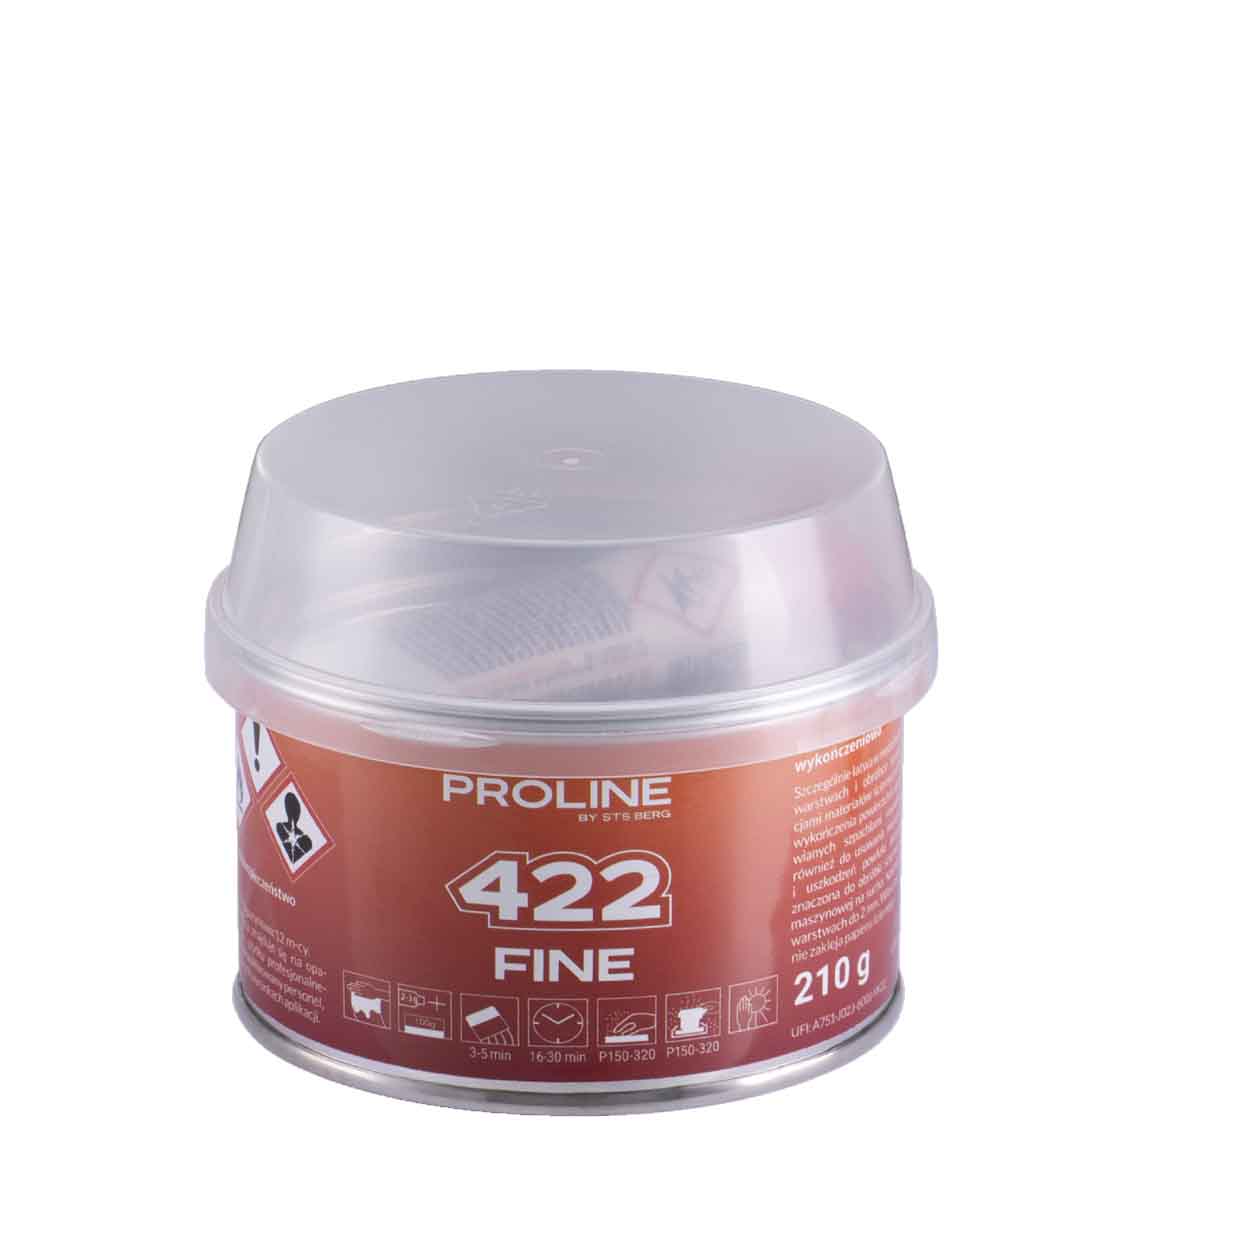 PROLINE 422 FINE finom végső tömítőanyag, súly: 210 g